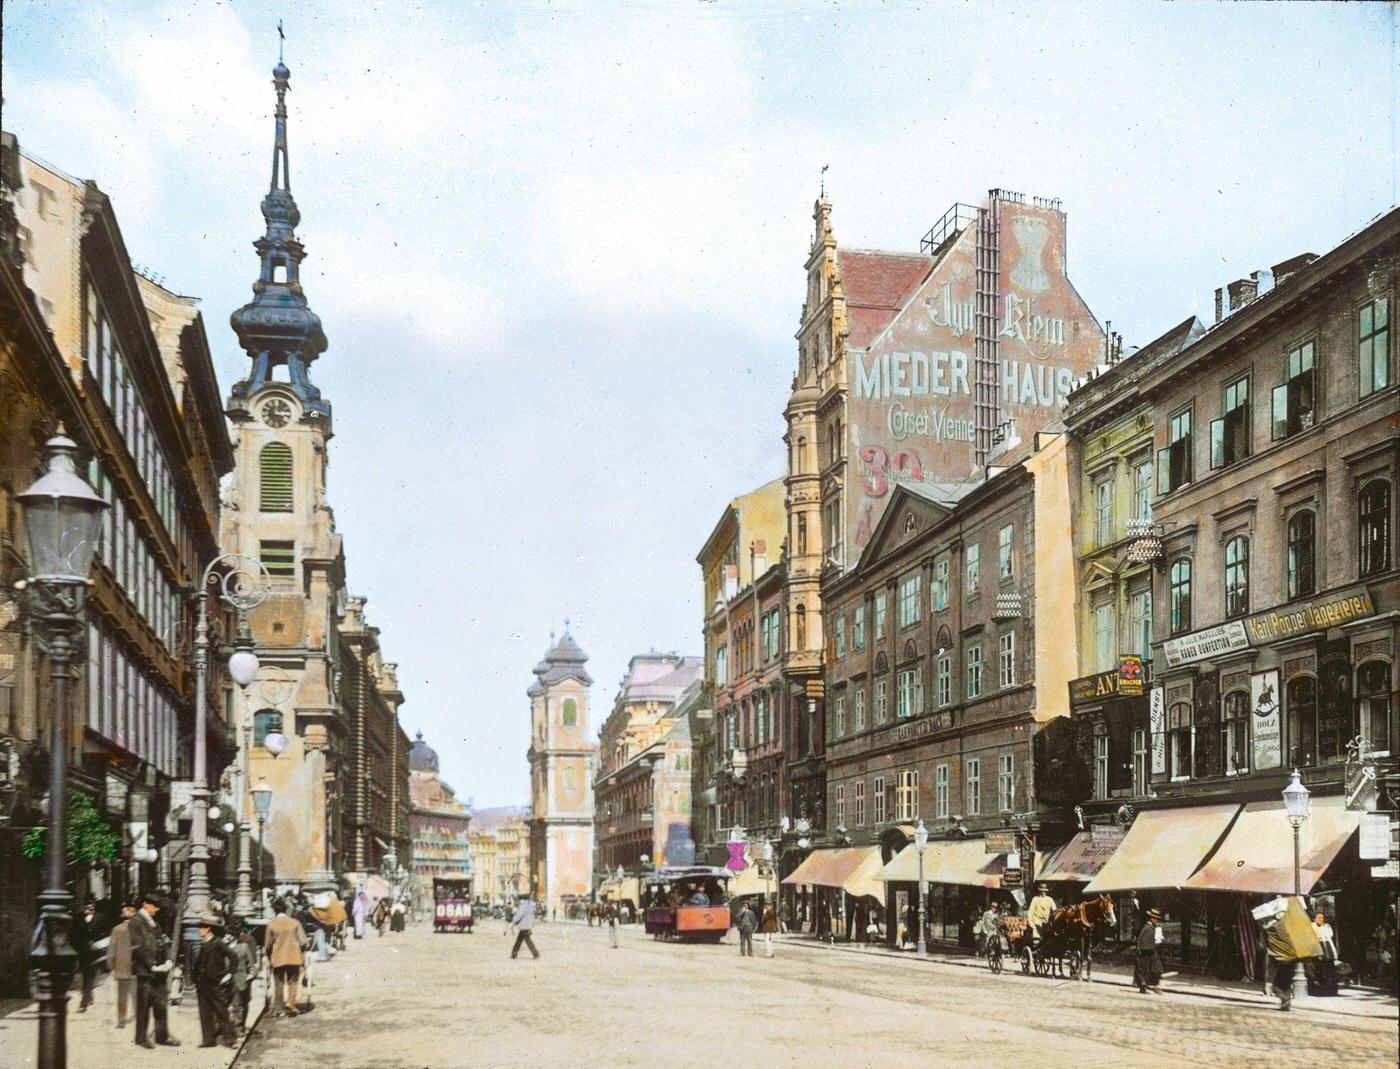 The Mariahilferstrasse in Vienna, Austria, 1890s